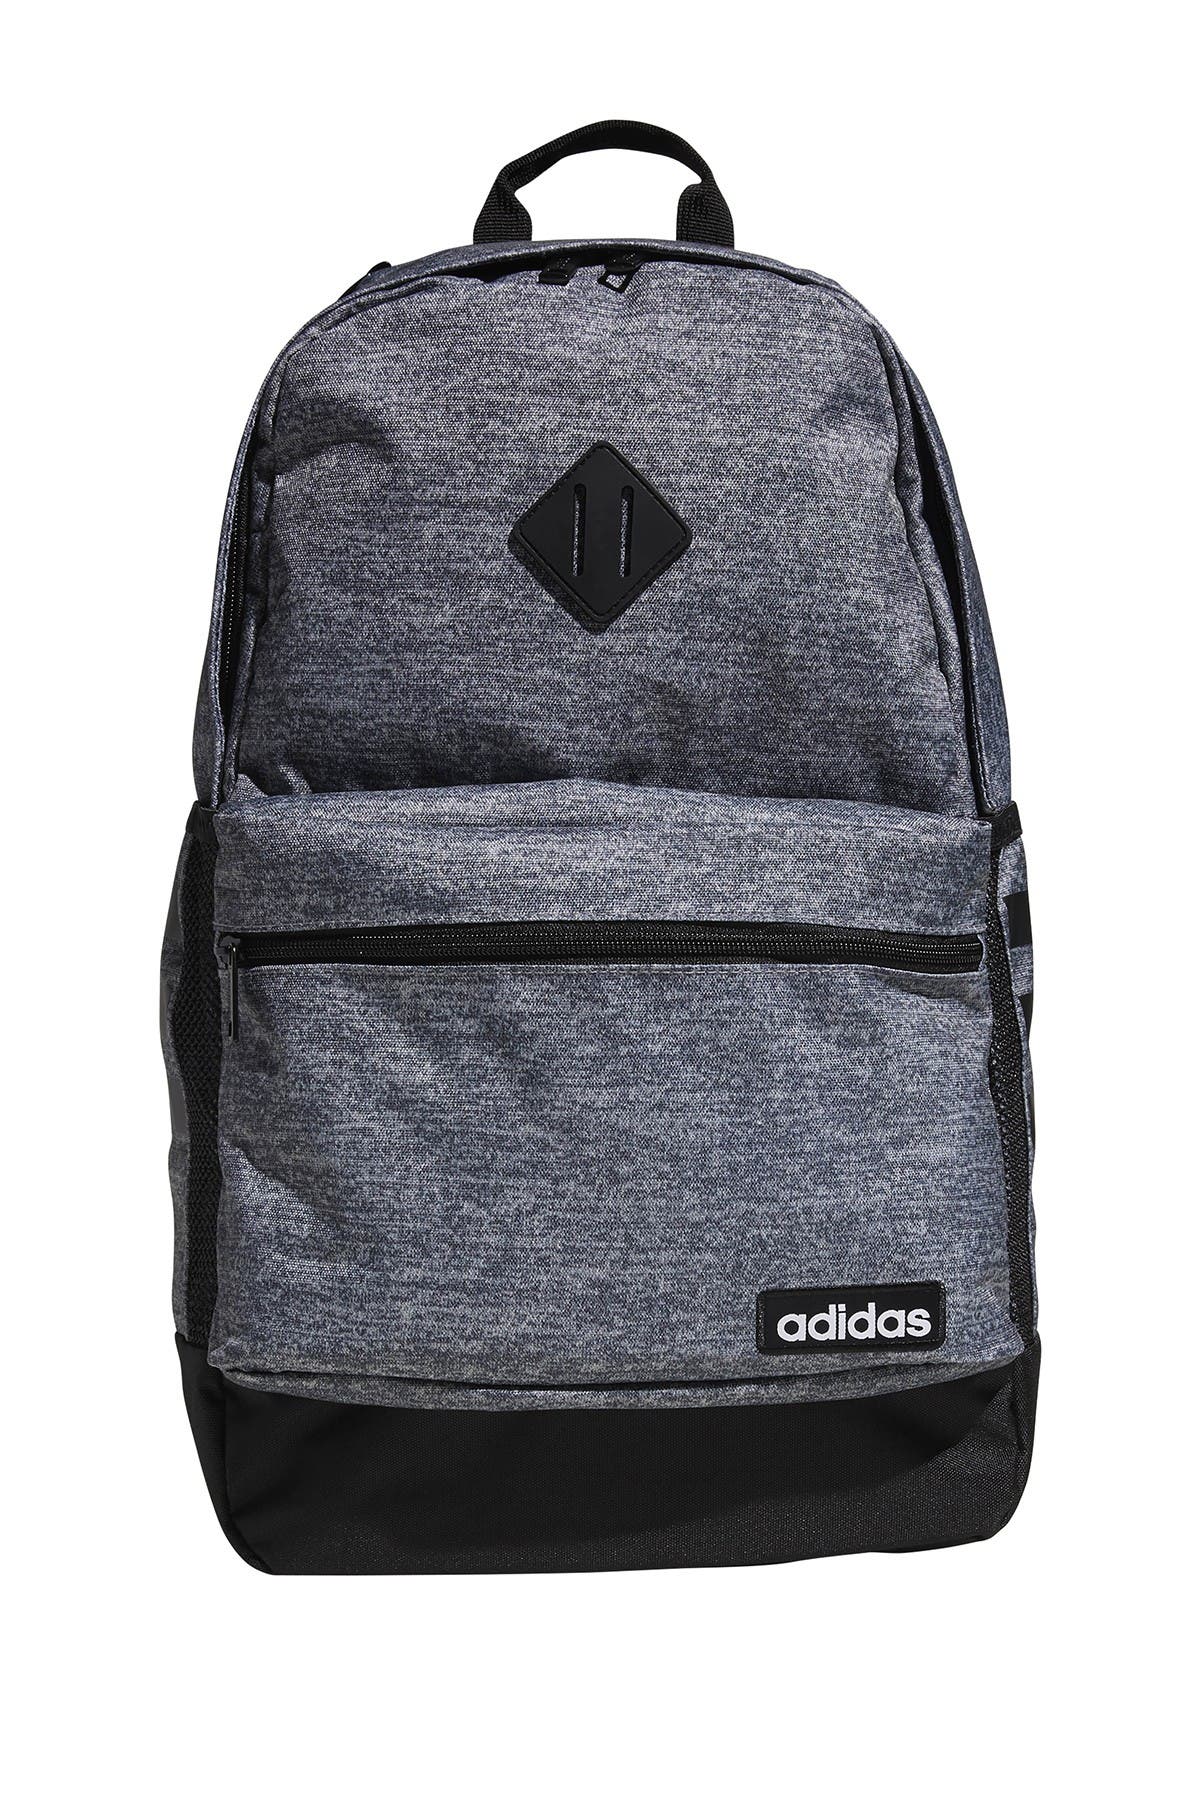 classic 3s ii backpack